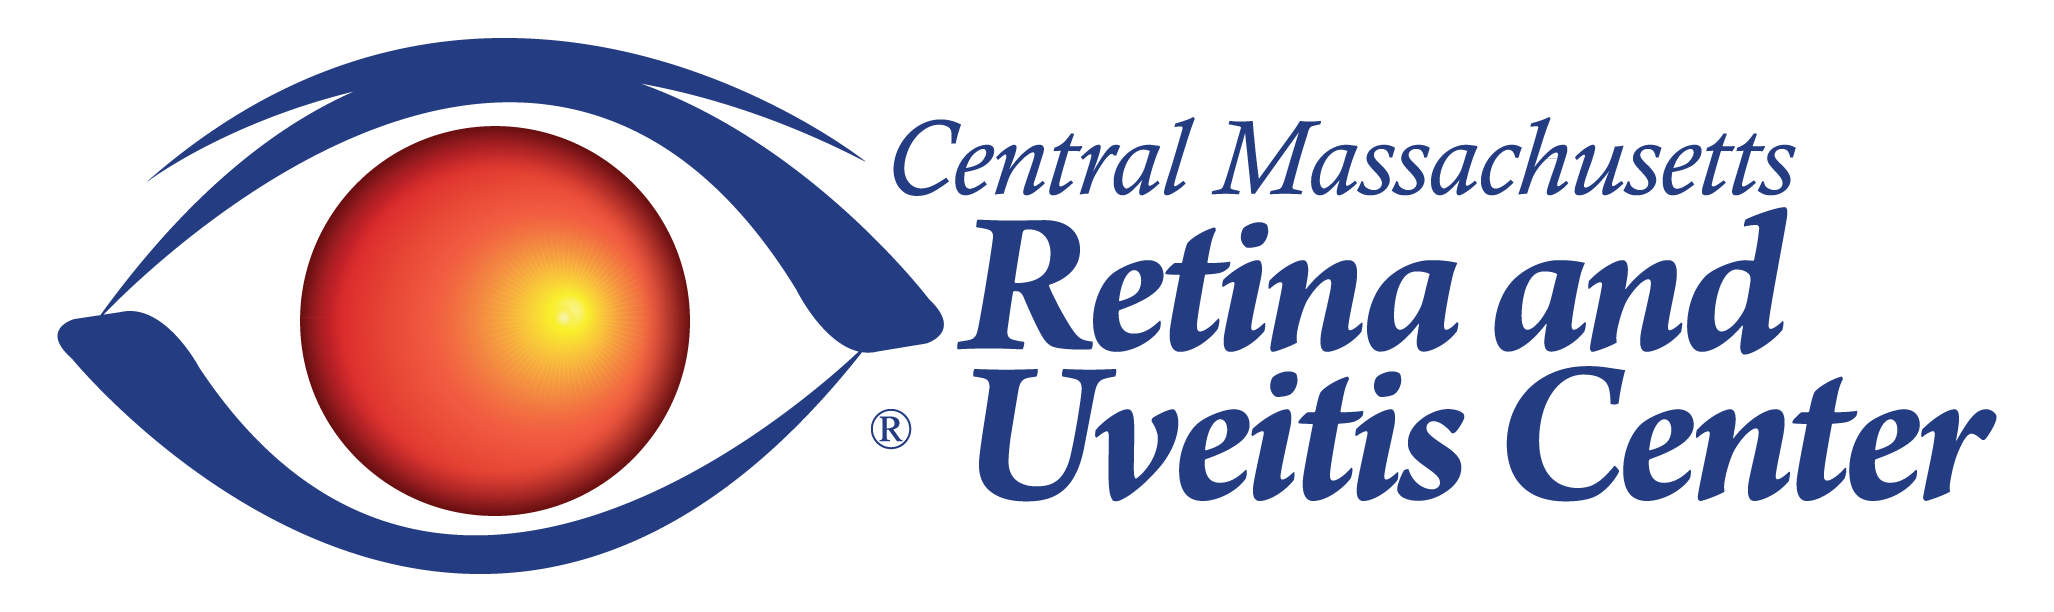 Central MA Retina and Uveitis Center